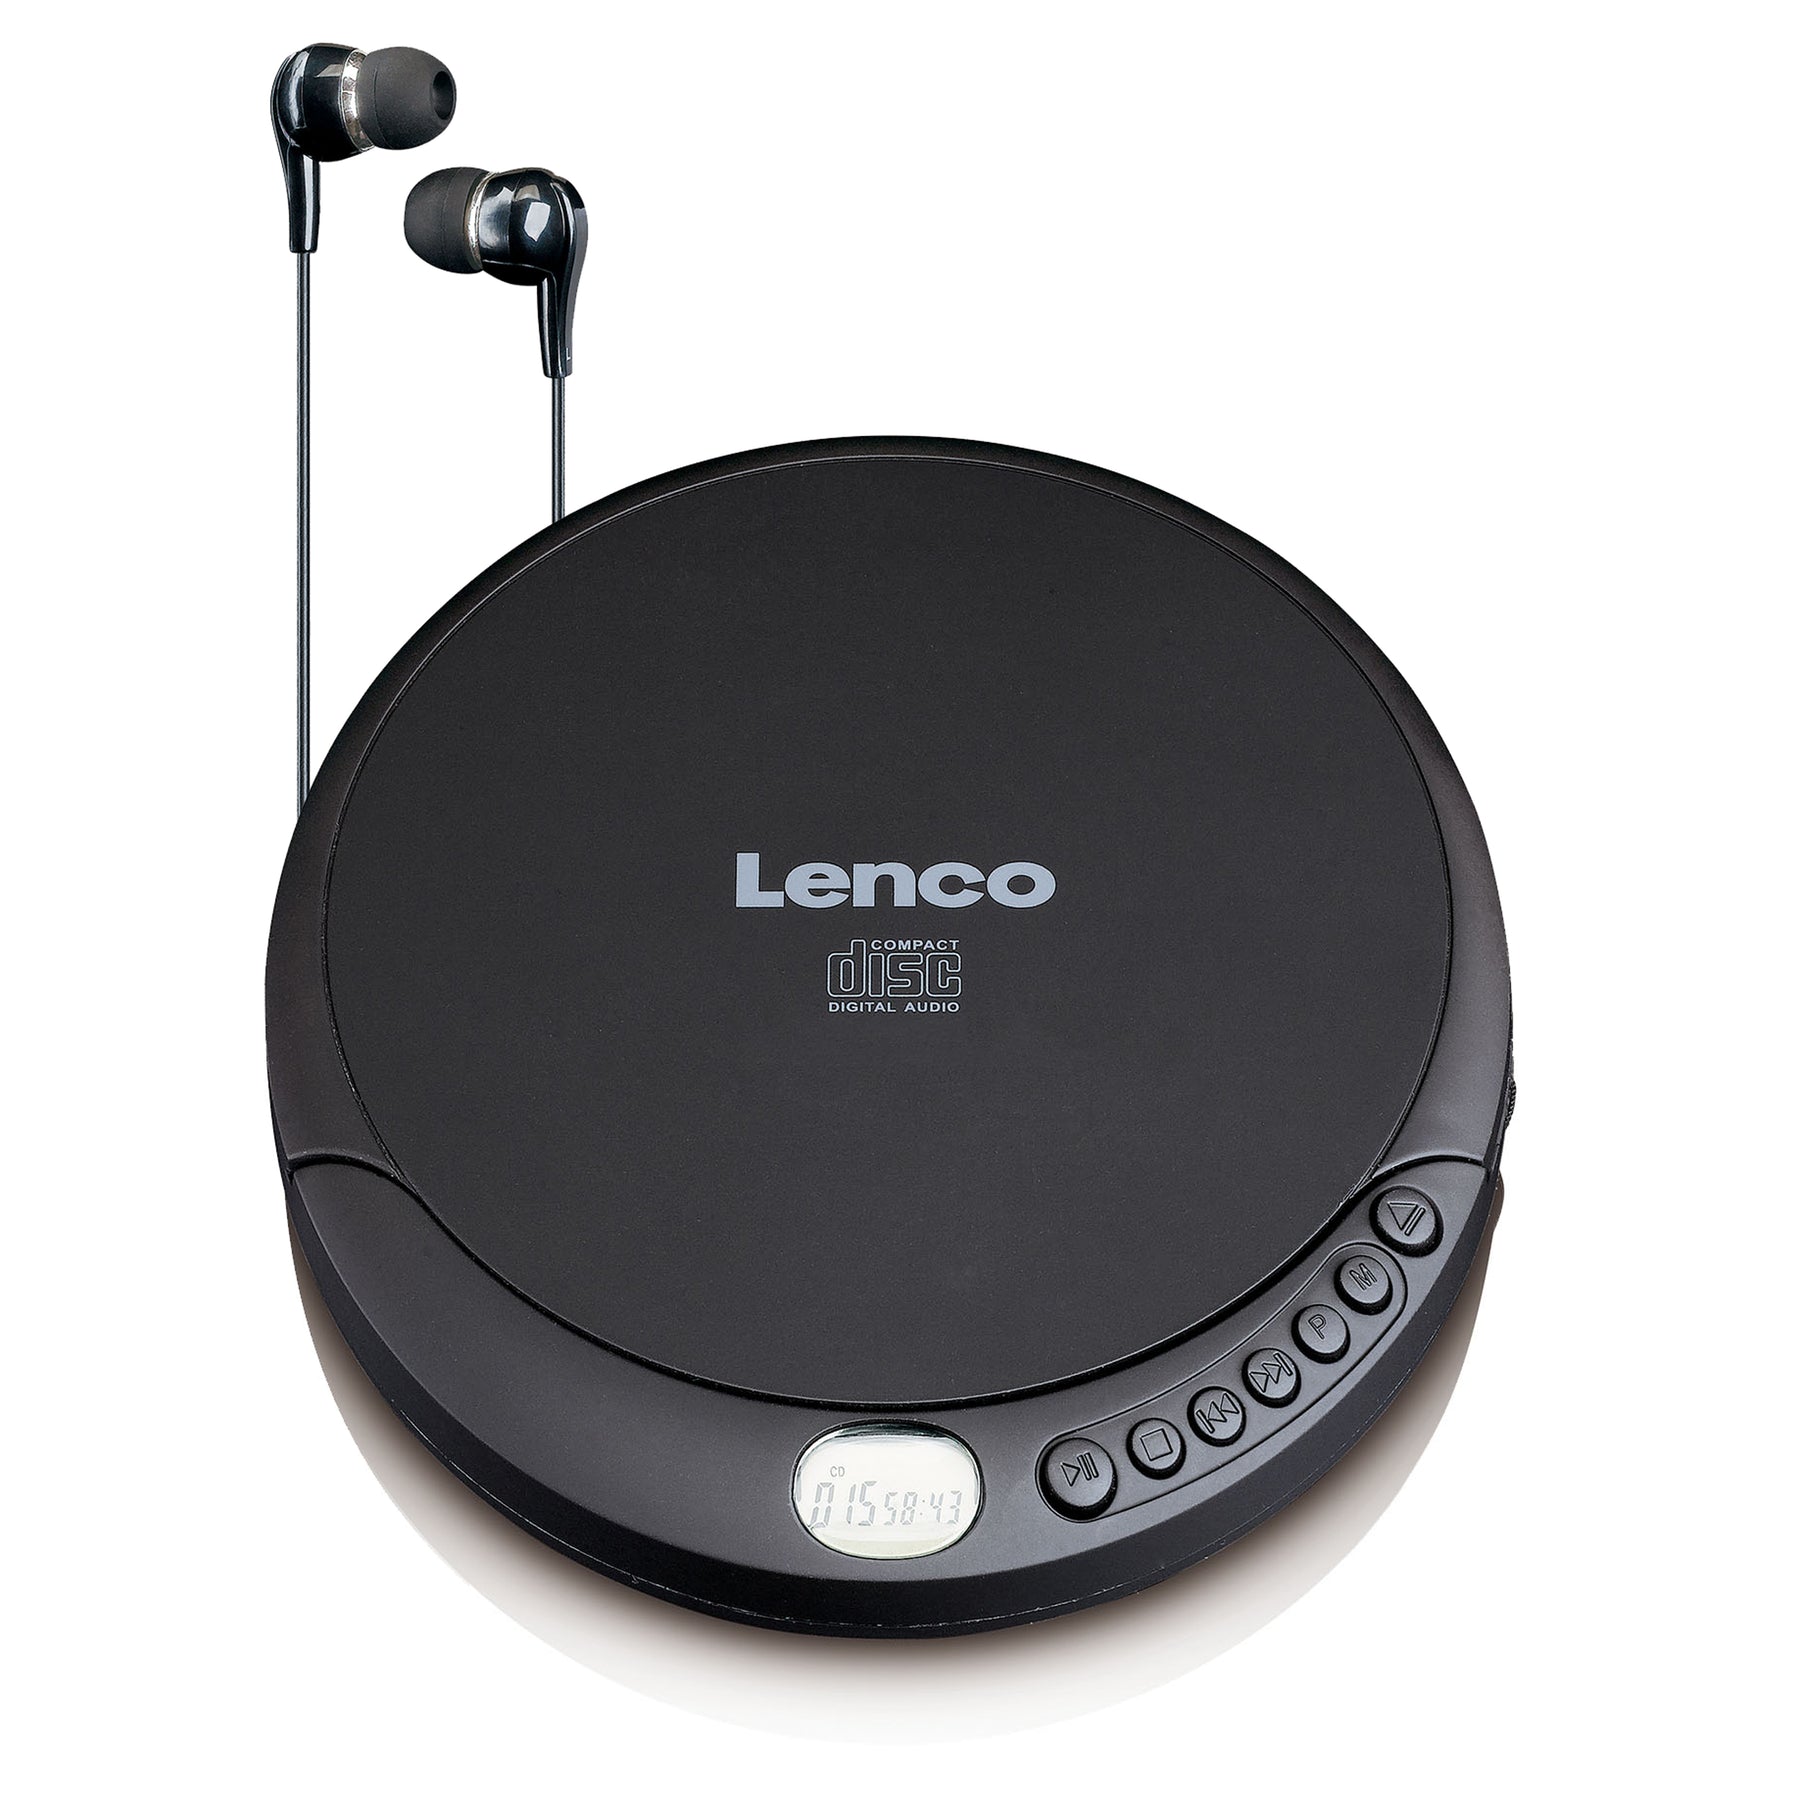 Lenco CD-010 earphones with Discman 